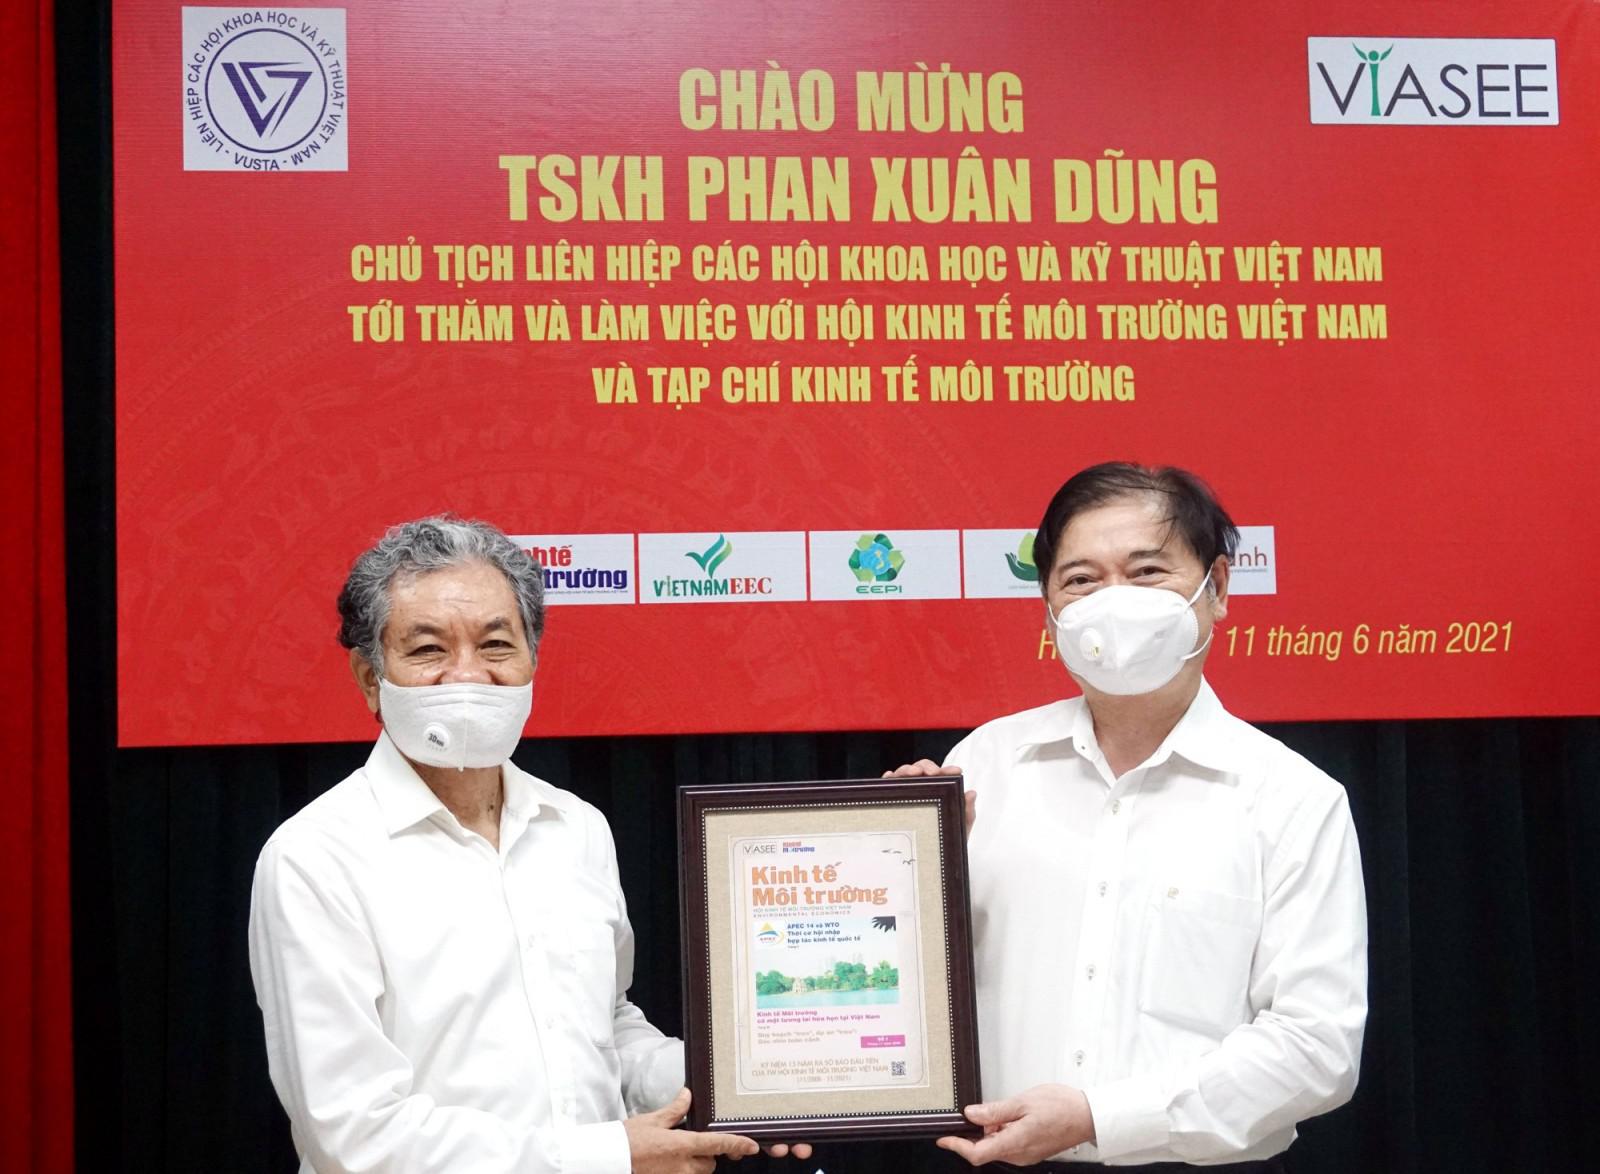 TSKH Phan Xuân Dũng, Chủ tịch VUSTA thăm, làm việc với VIASEE và TC Kinh tế Môi trường - 5